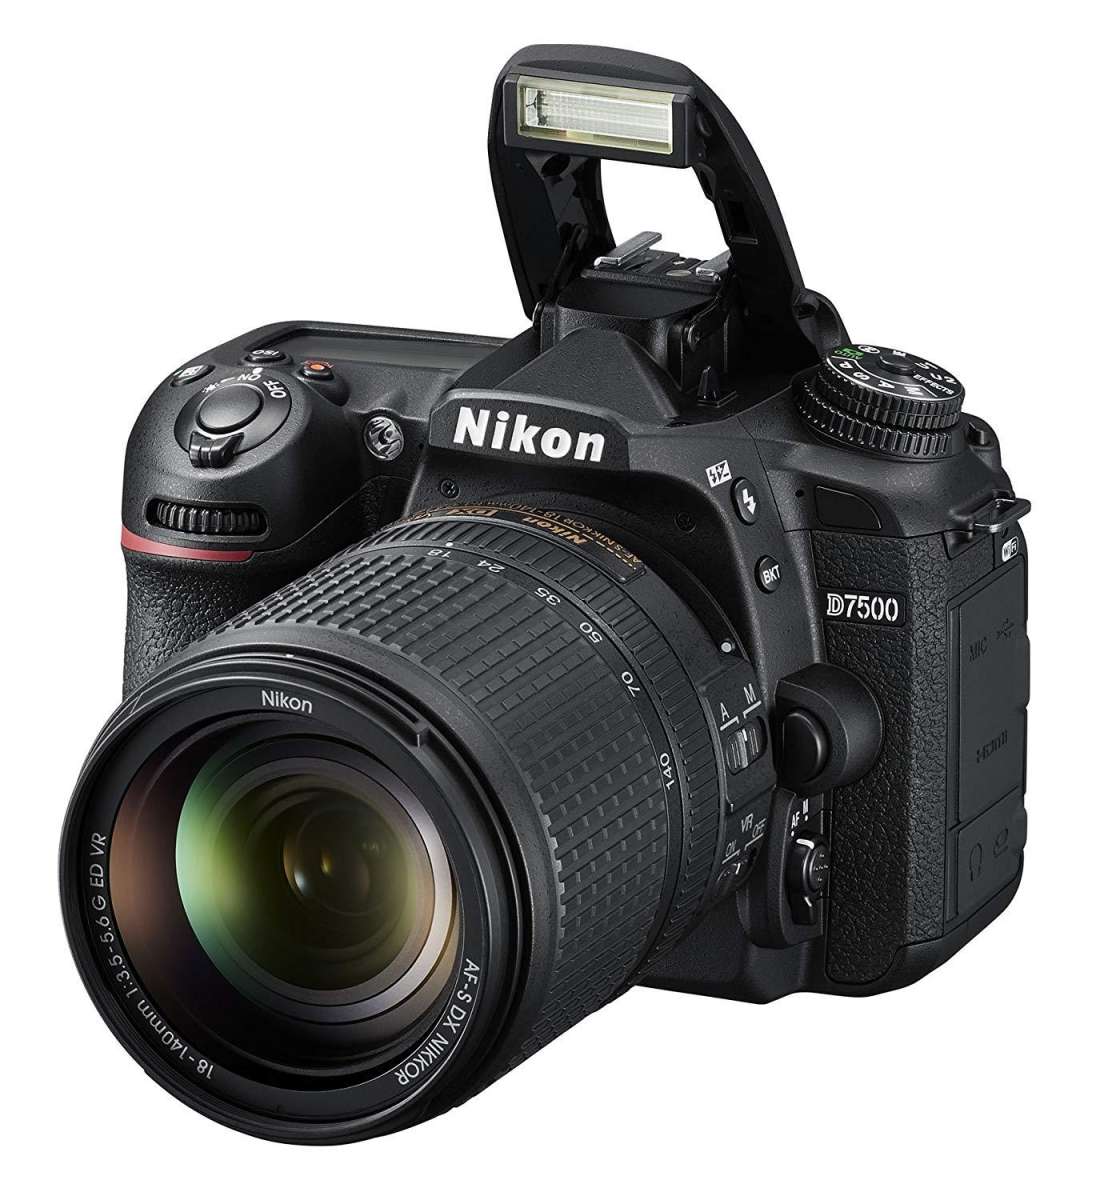 Brand New Original Nikon Camera